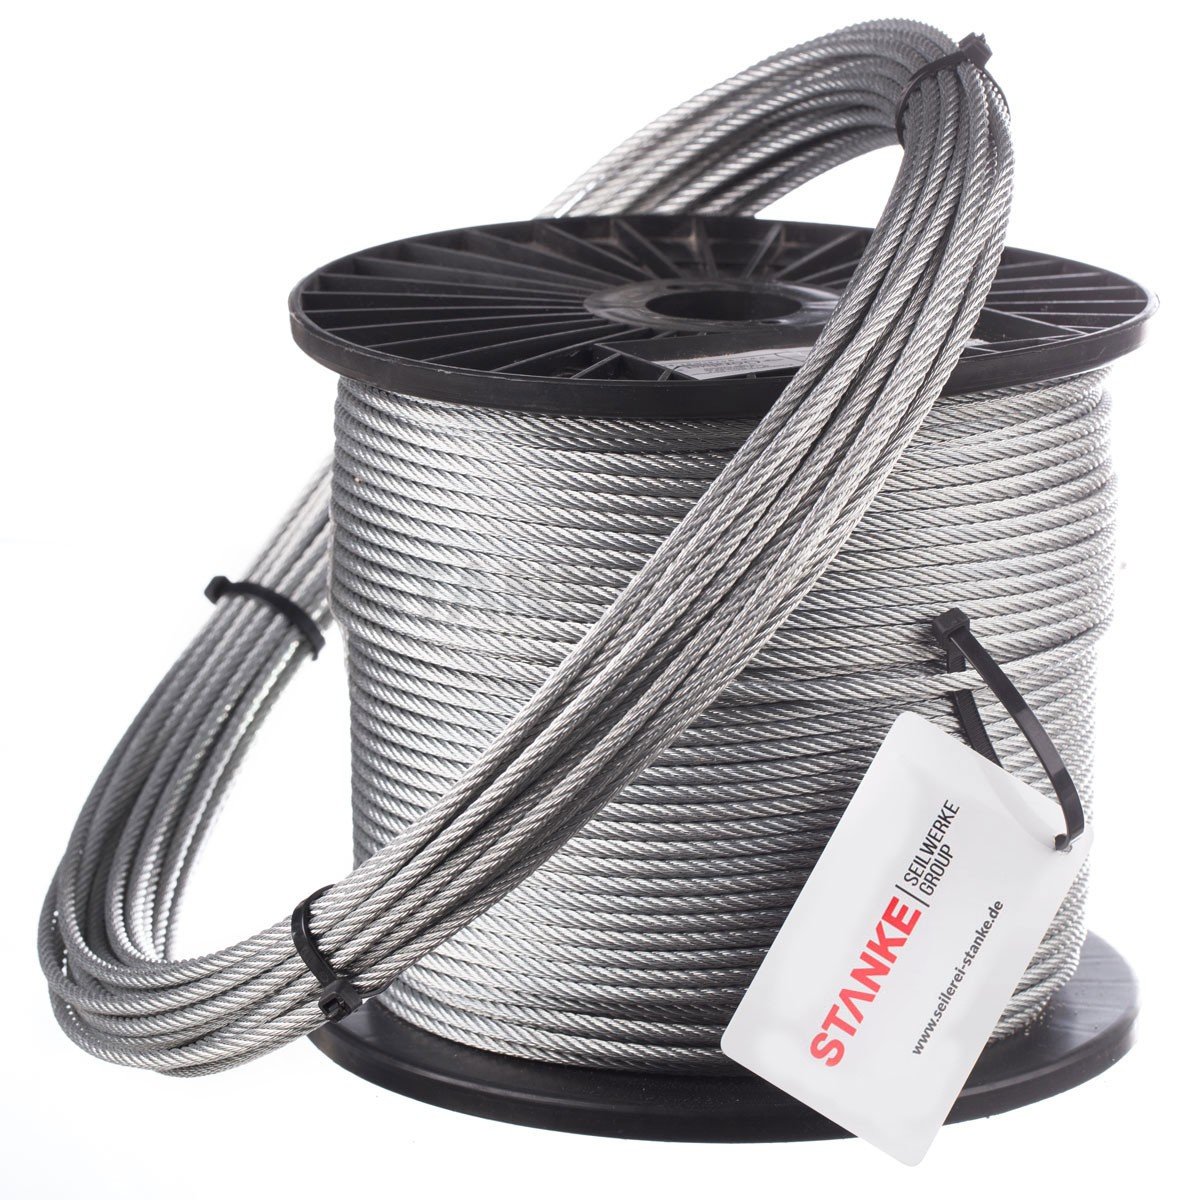 DRAHTSEIL IN PVC UMMANTELUNG 2-10mm verzinkt Stahlseil Draht ummanteltes Seil 